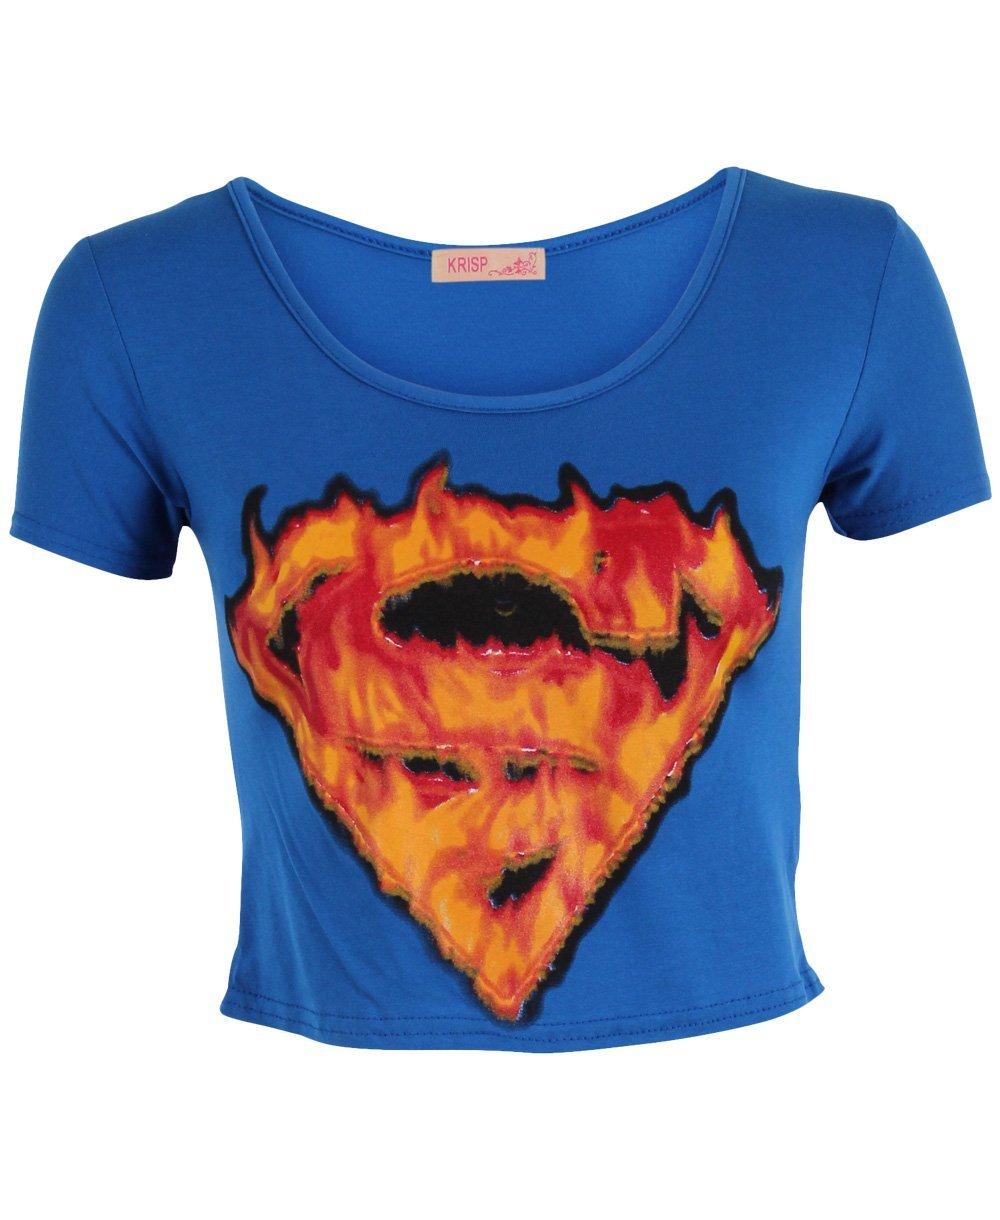 Foto KRISP Women's Flamed Logo Printed Superman Top foto 846177